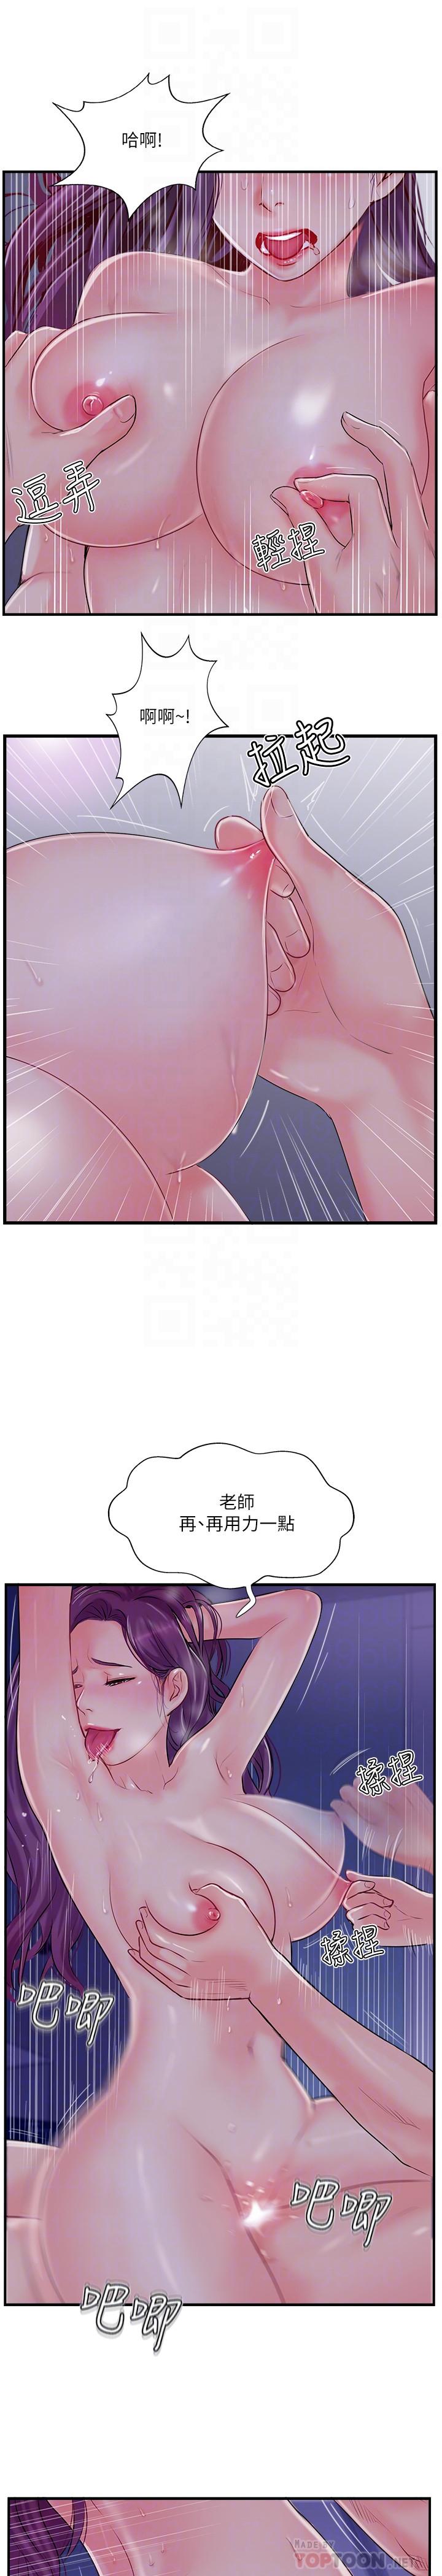 韩国污漫画 完美新伴侶 第11话-皮肤光滑细嫩的人妻 8